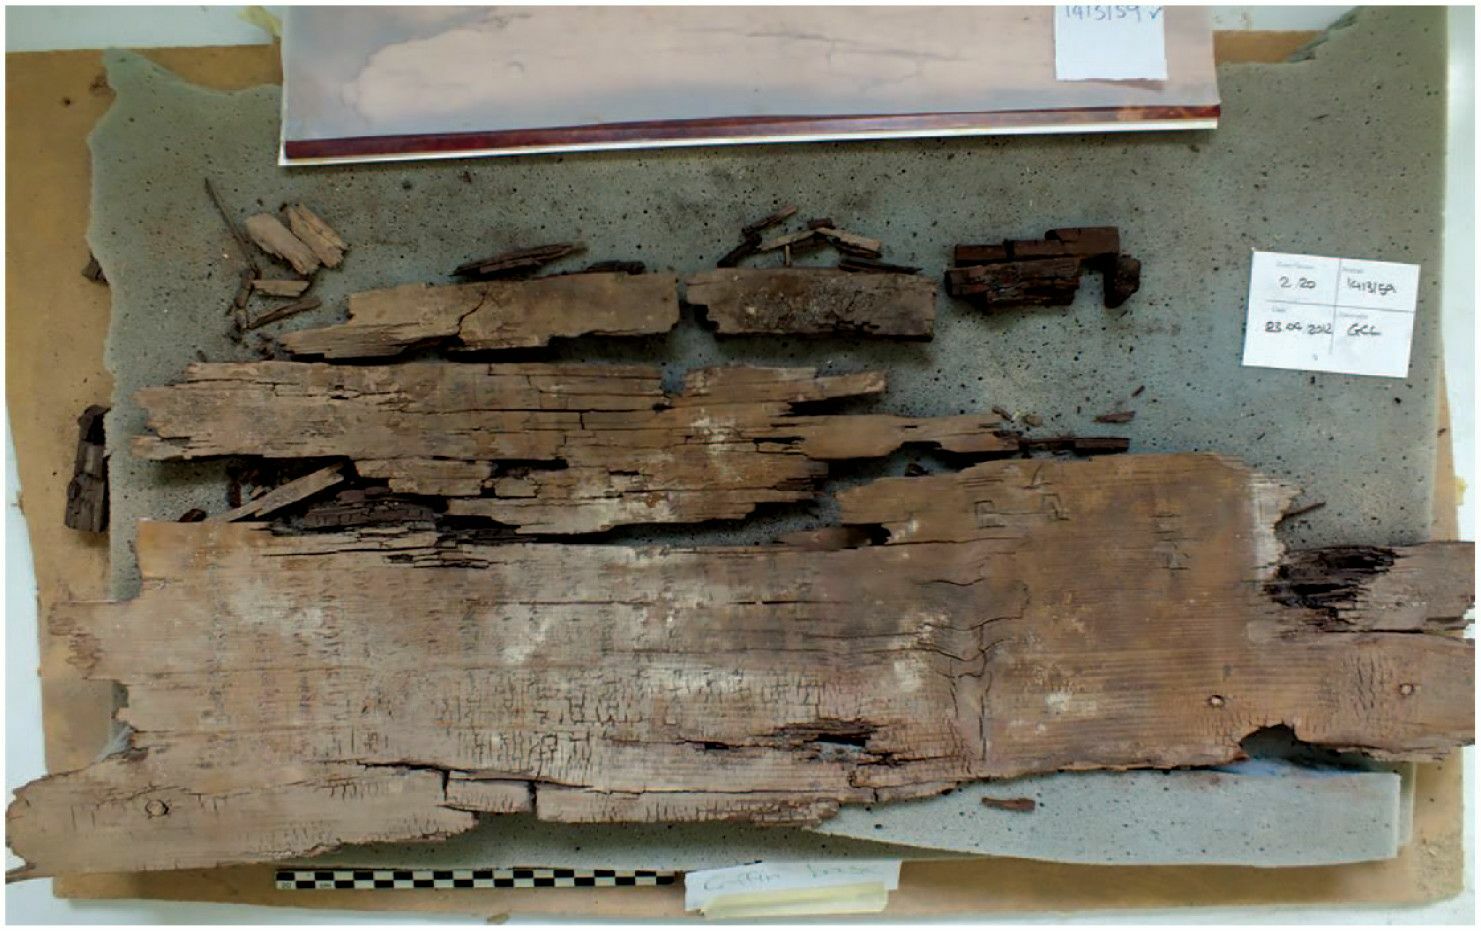 یک تابلوی چوبی از روی تابوت با قدیمی ترین کتاب دو راهی حک شده است